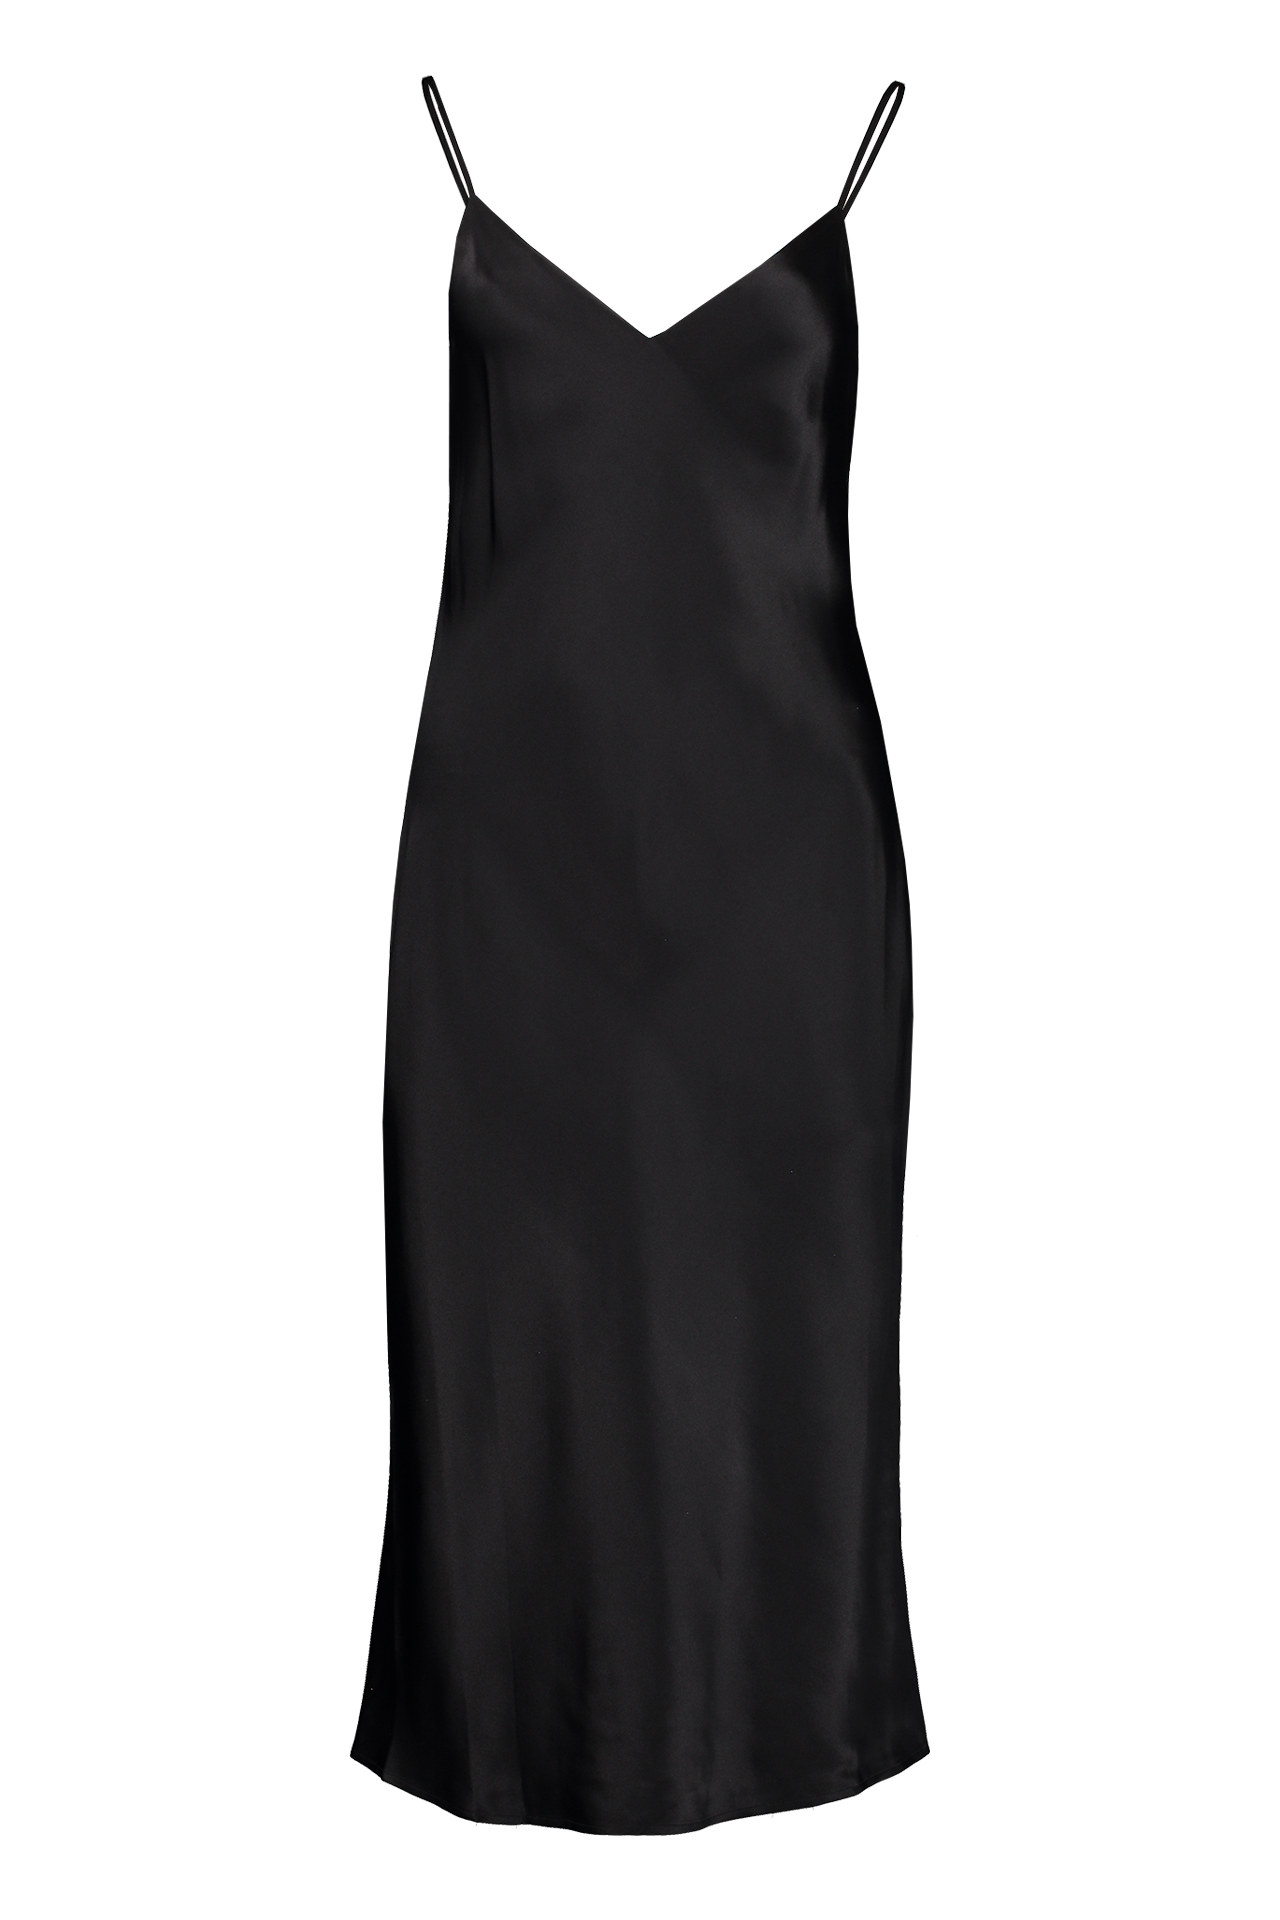 Lagence Jodie V-Neck Slip Dress Black Front Mannequin Image (3925354709107)